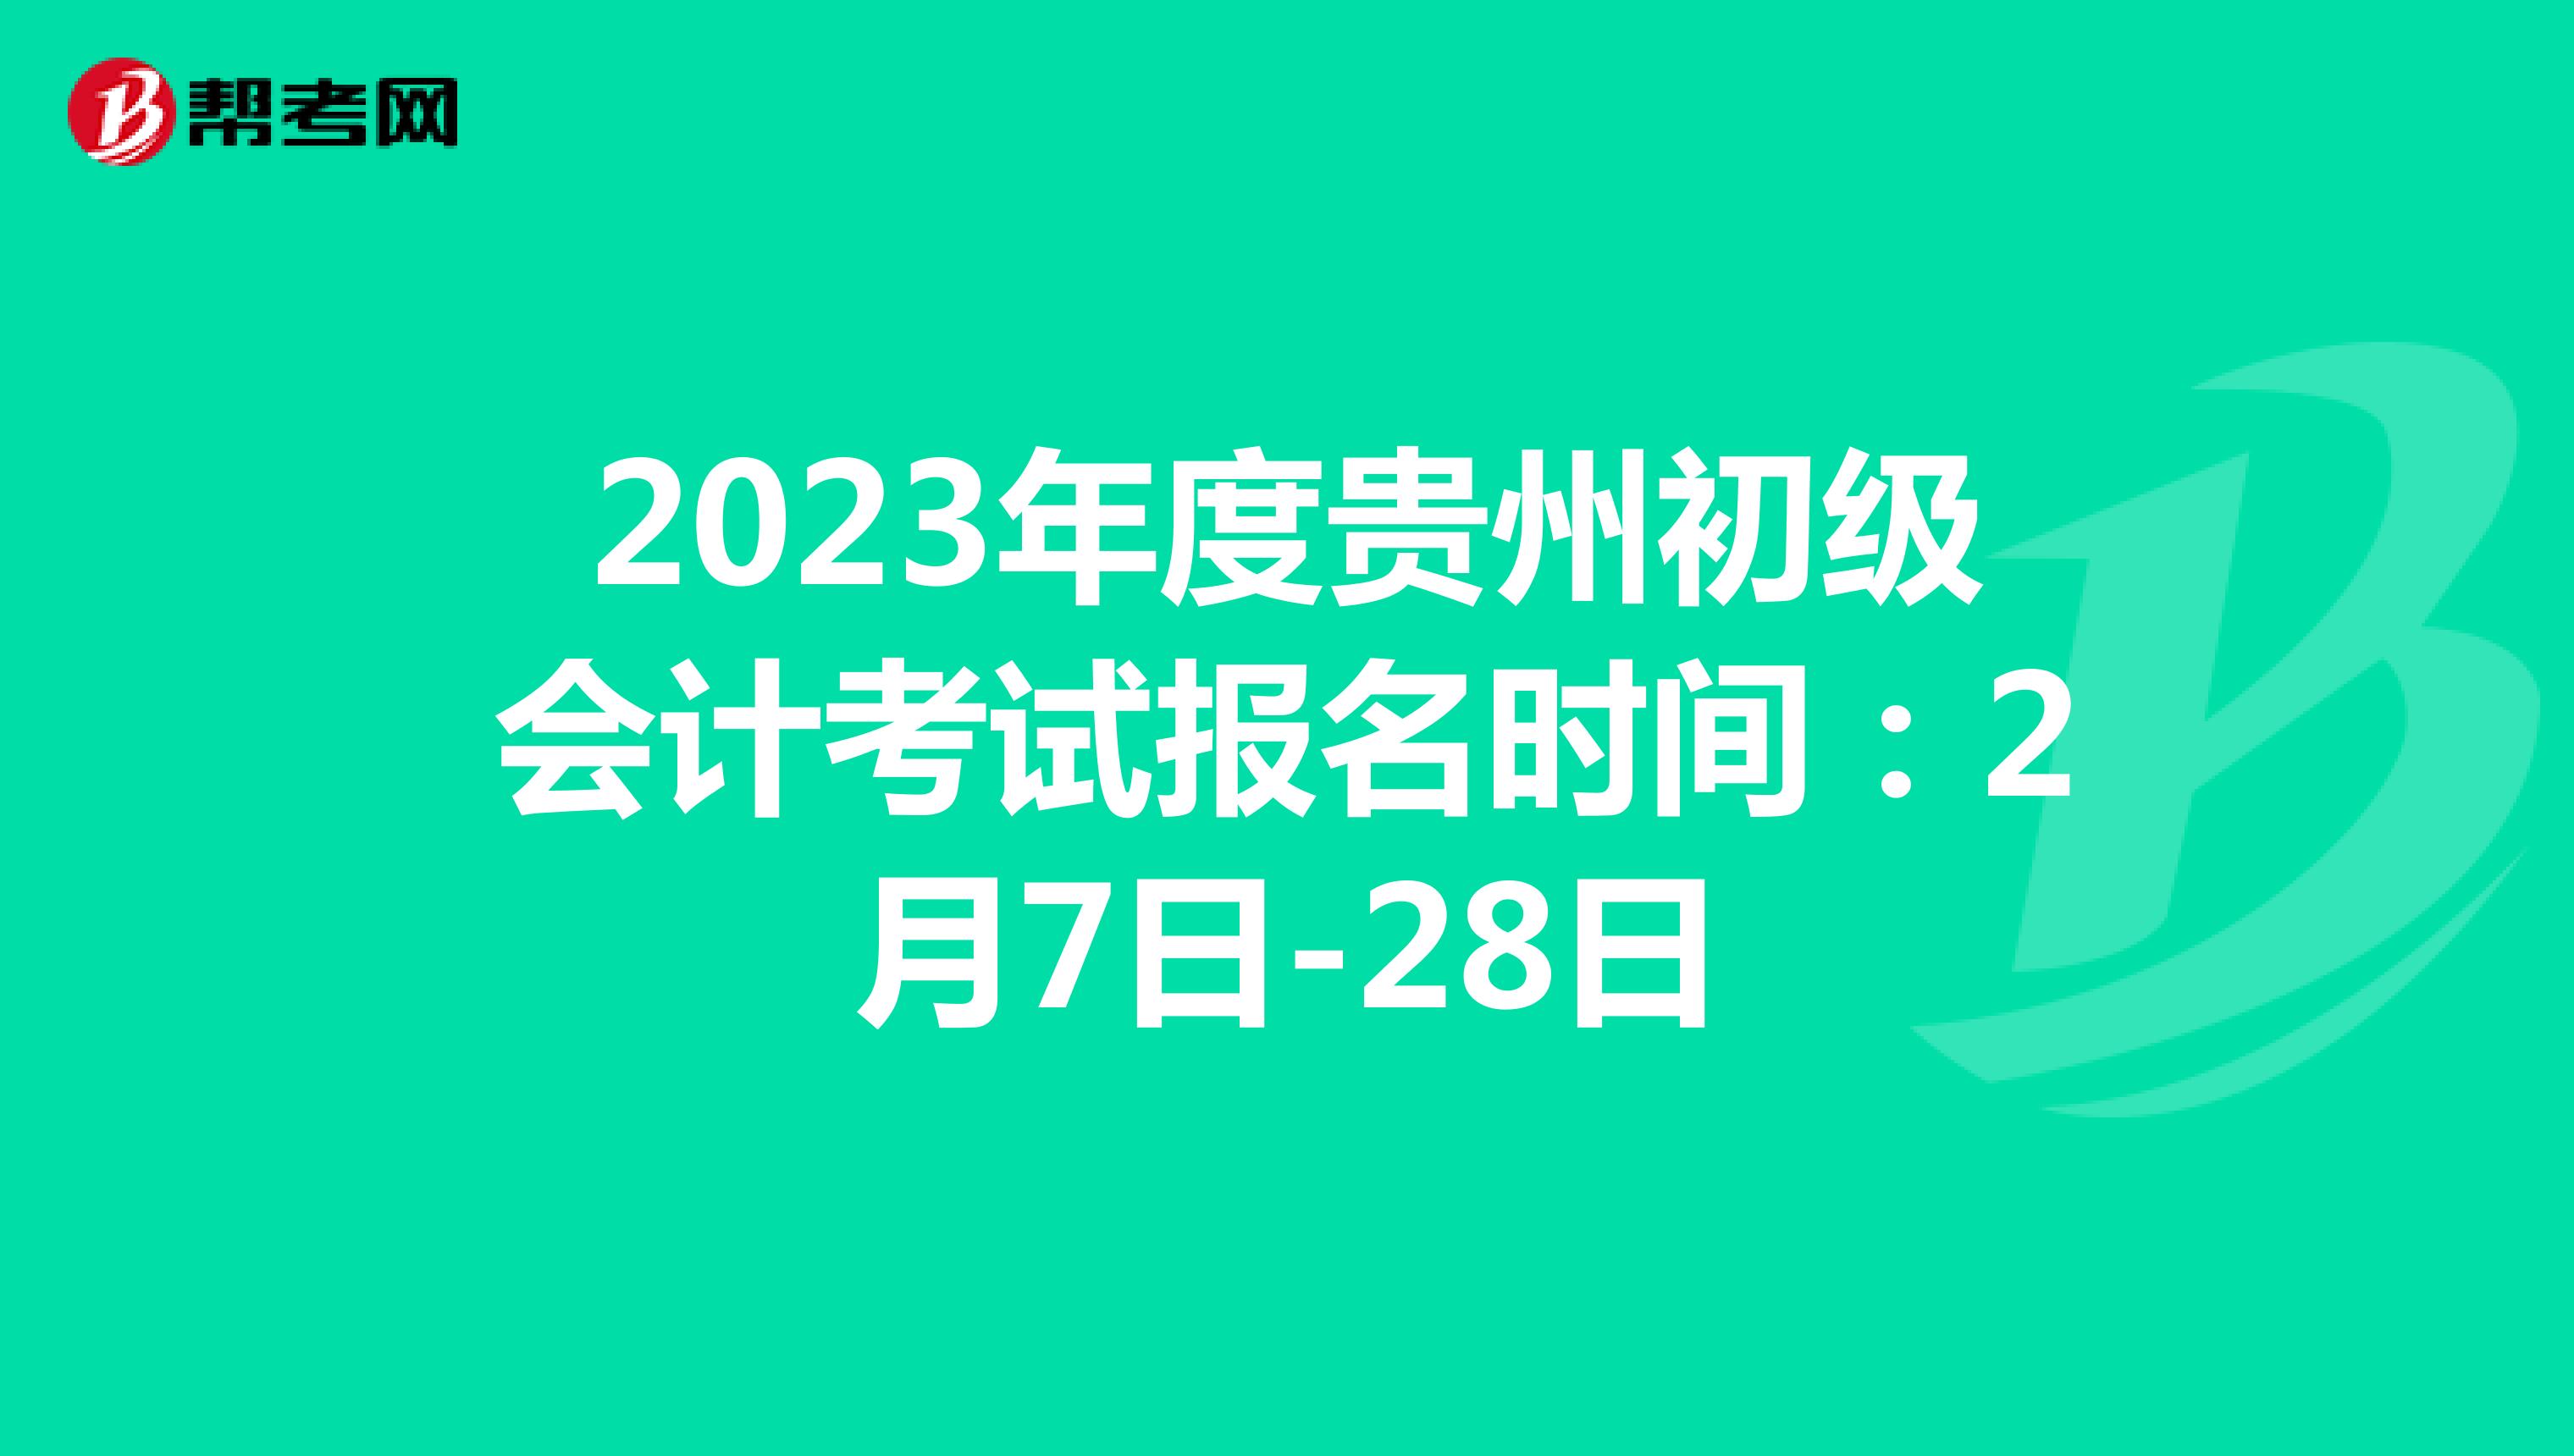 2023年度贵州初级会计考试报名时间：2月7日-28日